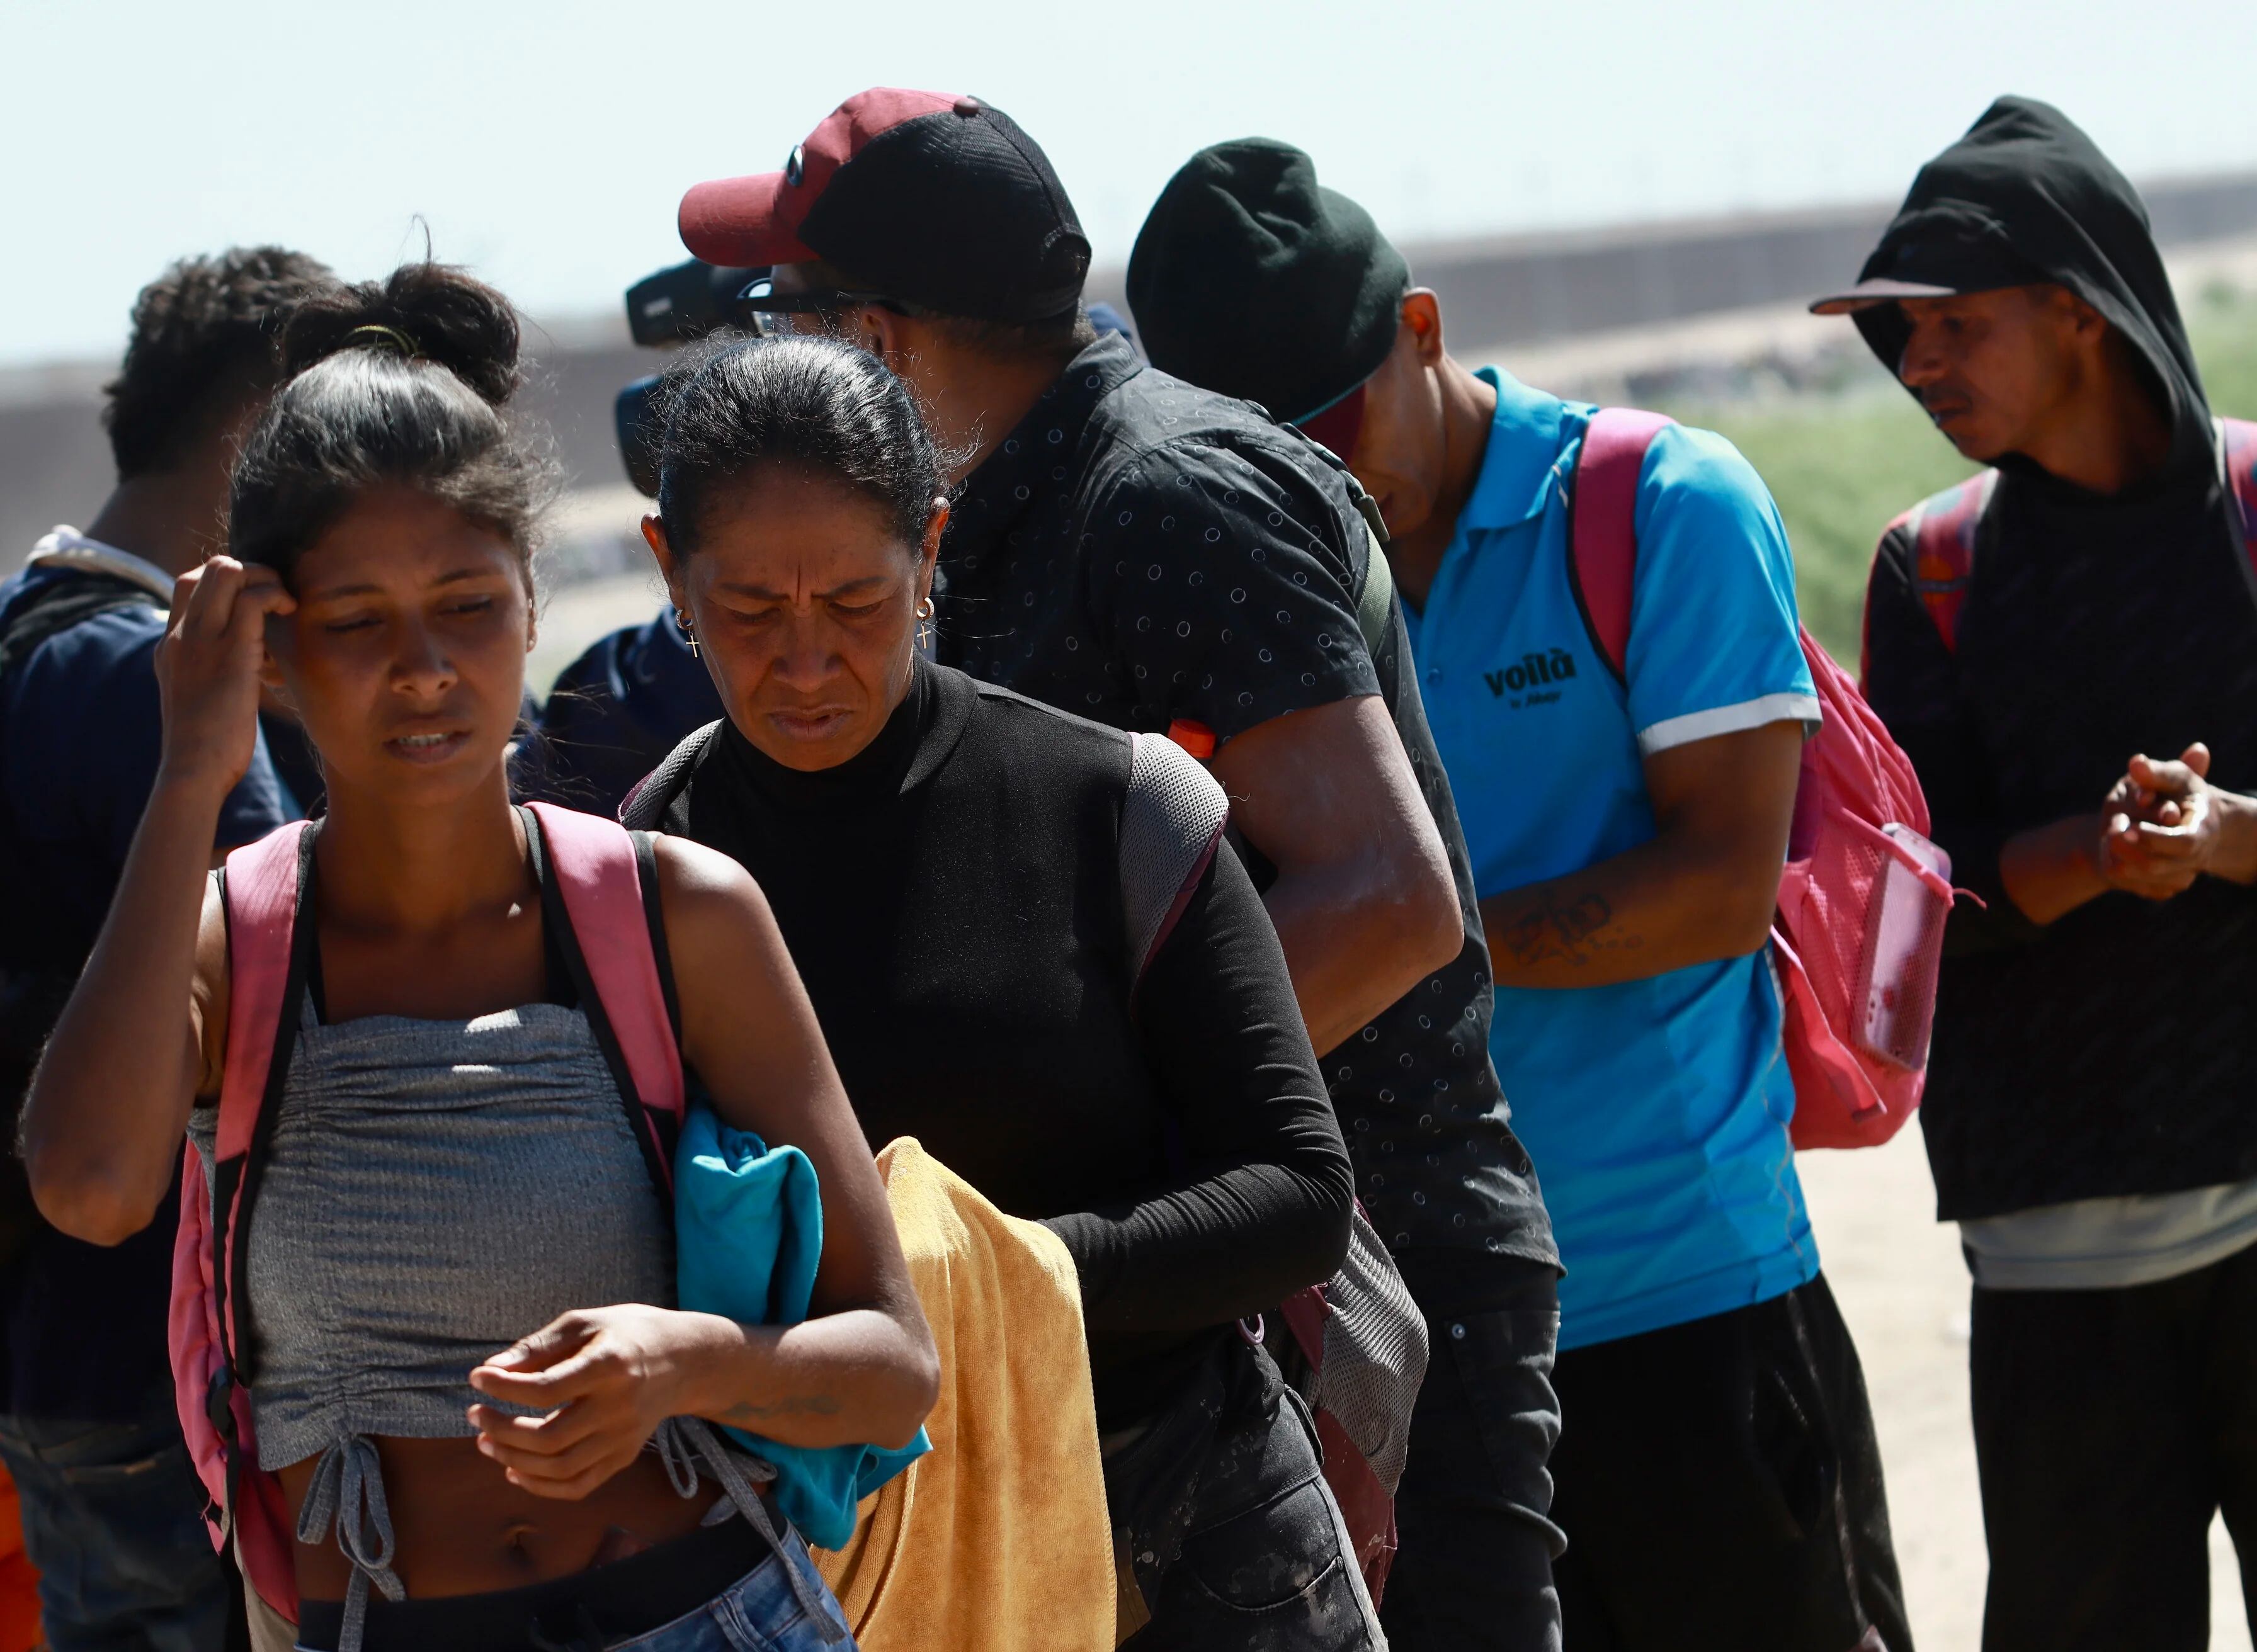 MEMéxico vive un repunte en el flujo migratorio, con miles de migrantes atravesando el país de múltiples formas, tras la caída inicial que provocó la expiración del Título 42 de Estados Unidos. EFE/Luis Torres
